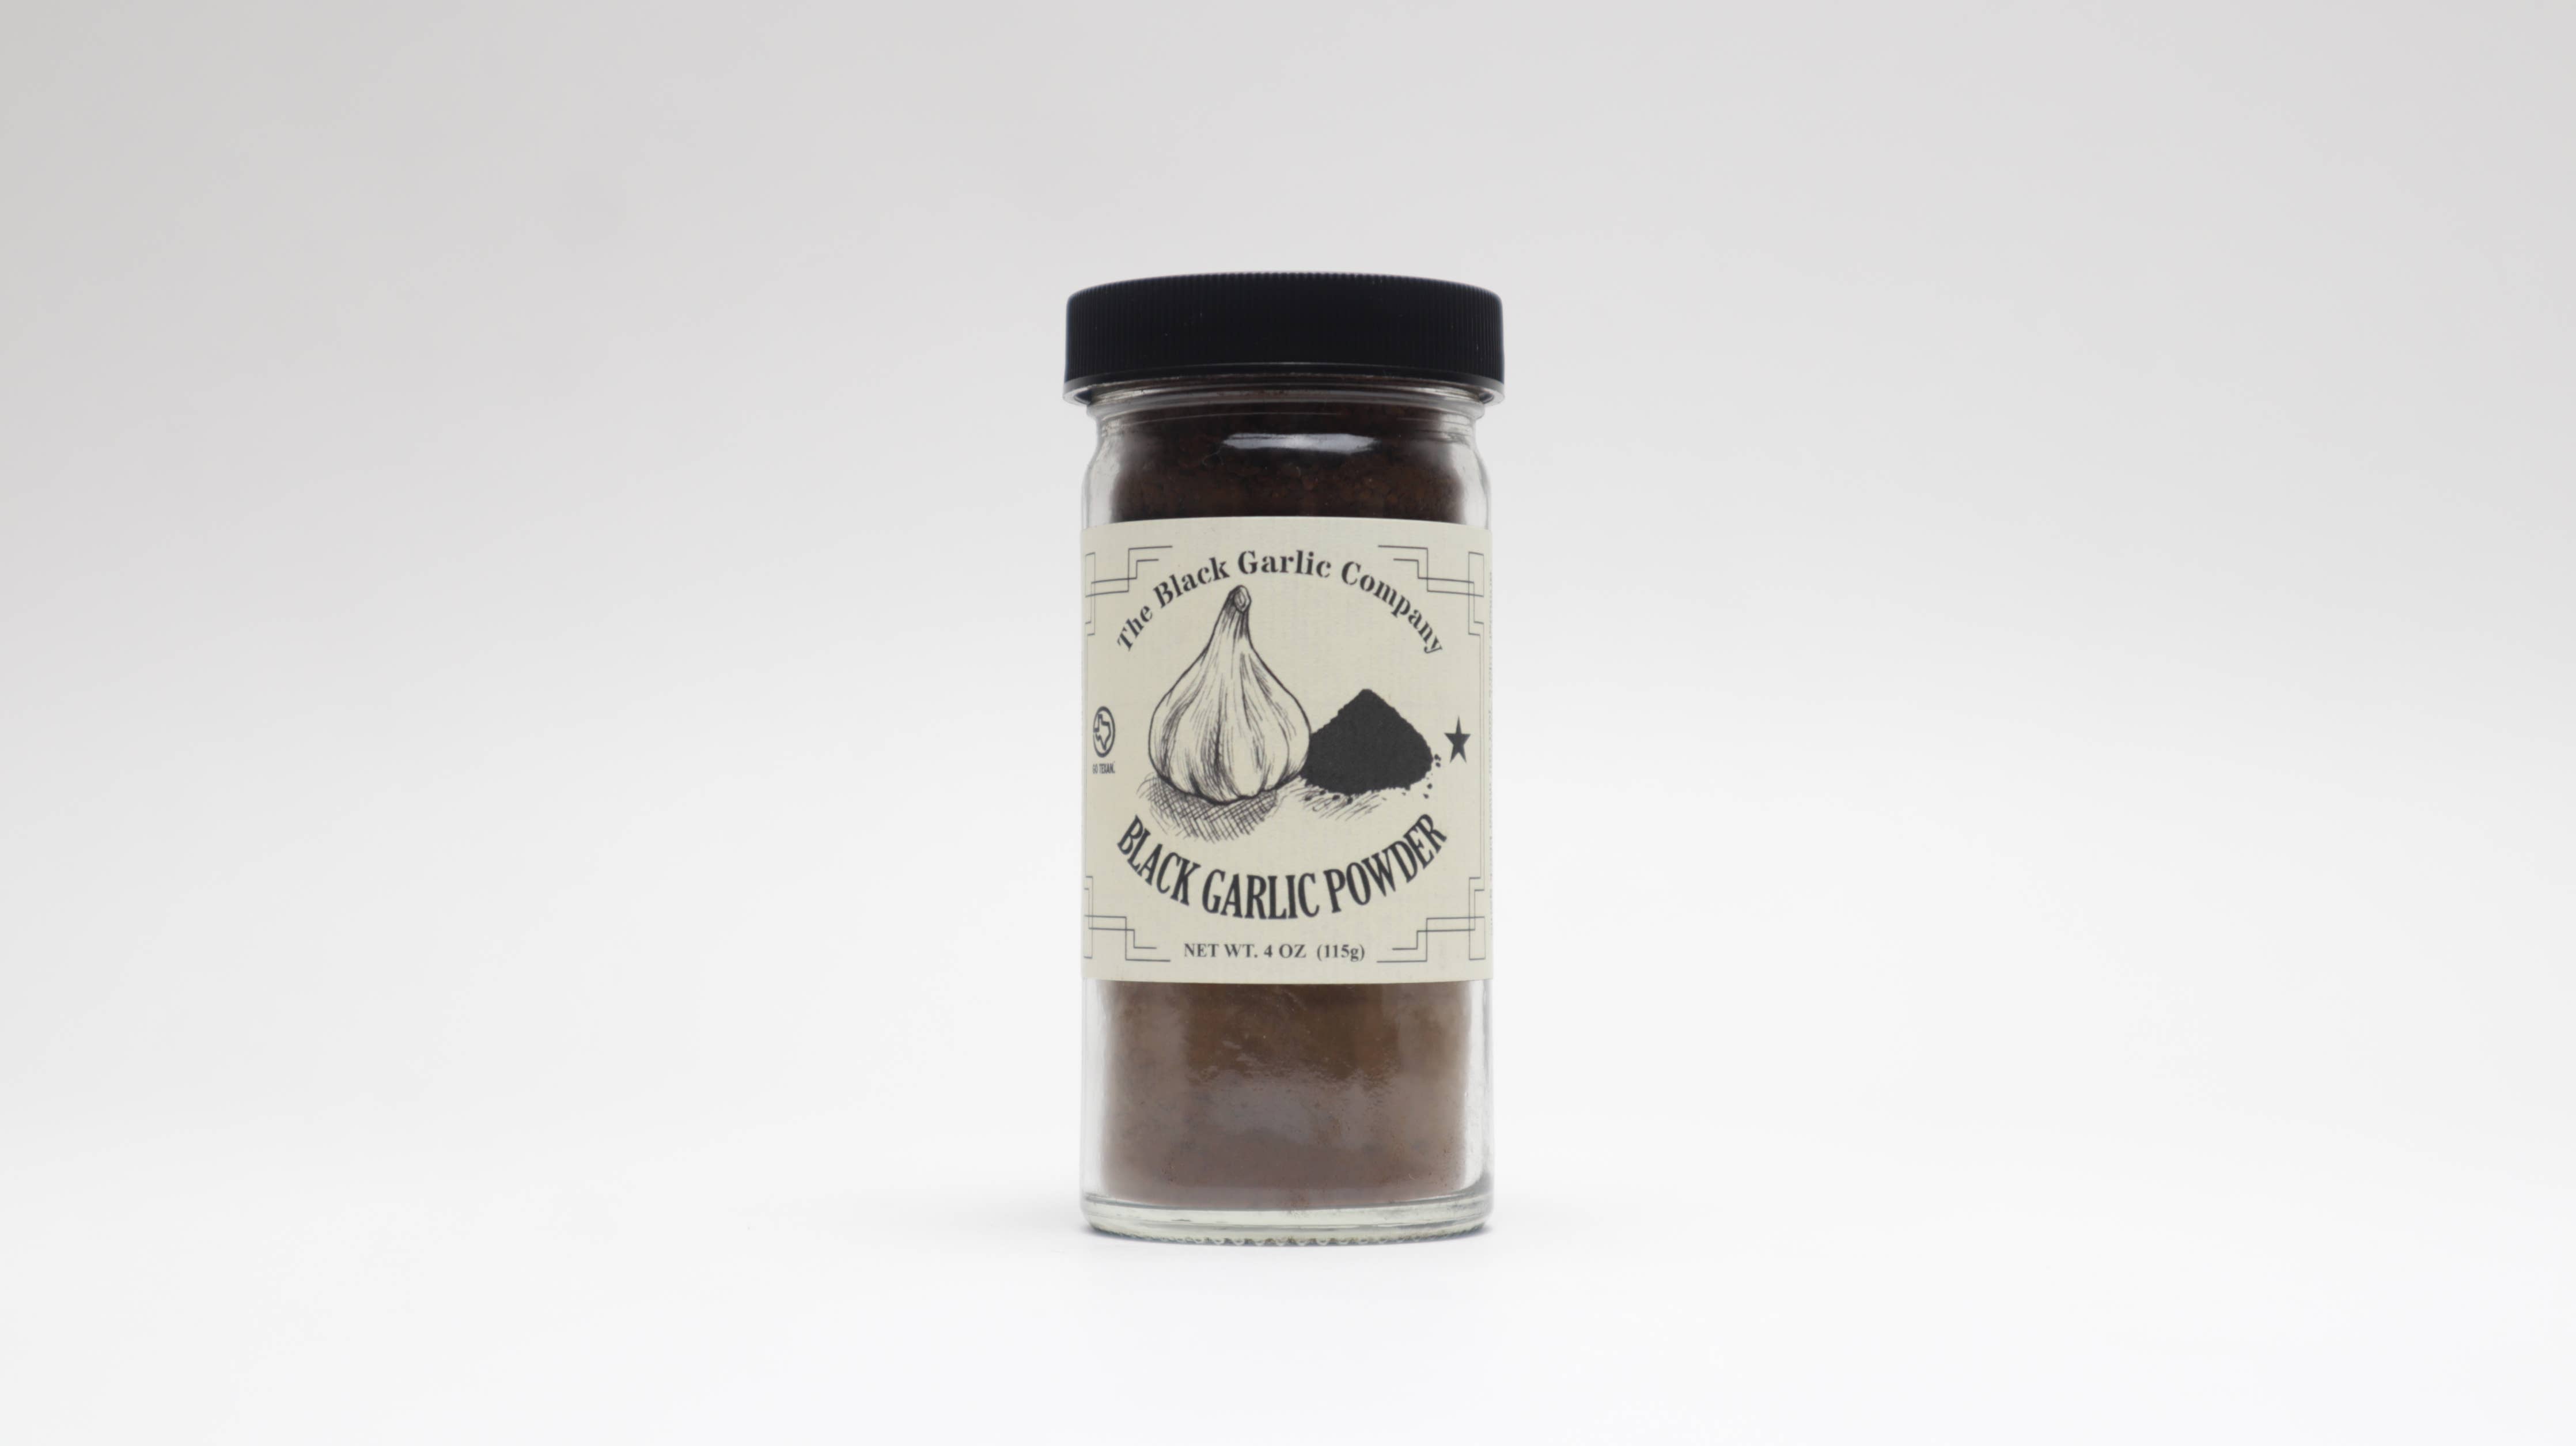 The Black Garlic Company - Black Garlic Powder 4 oz Jar